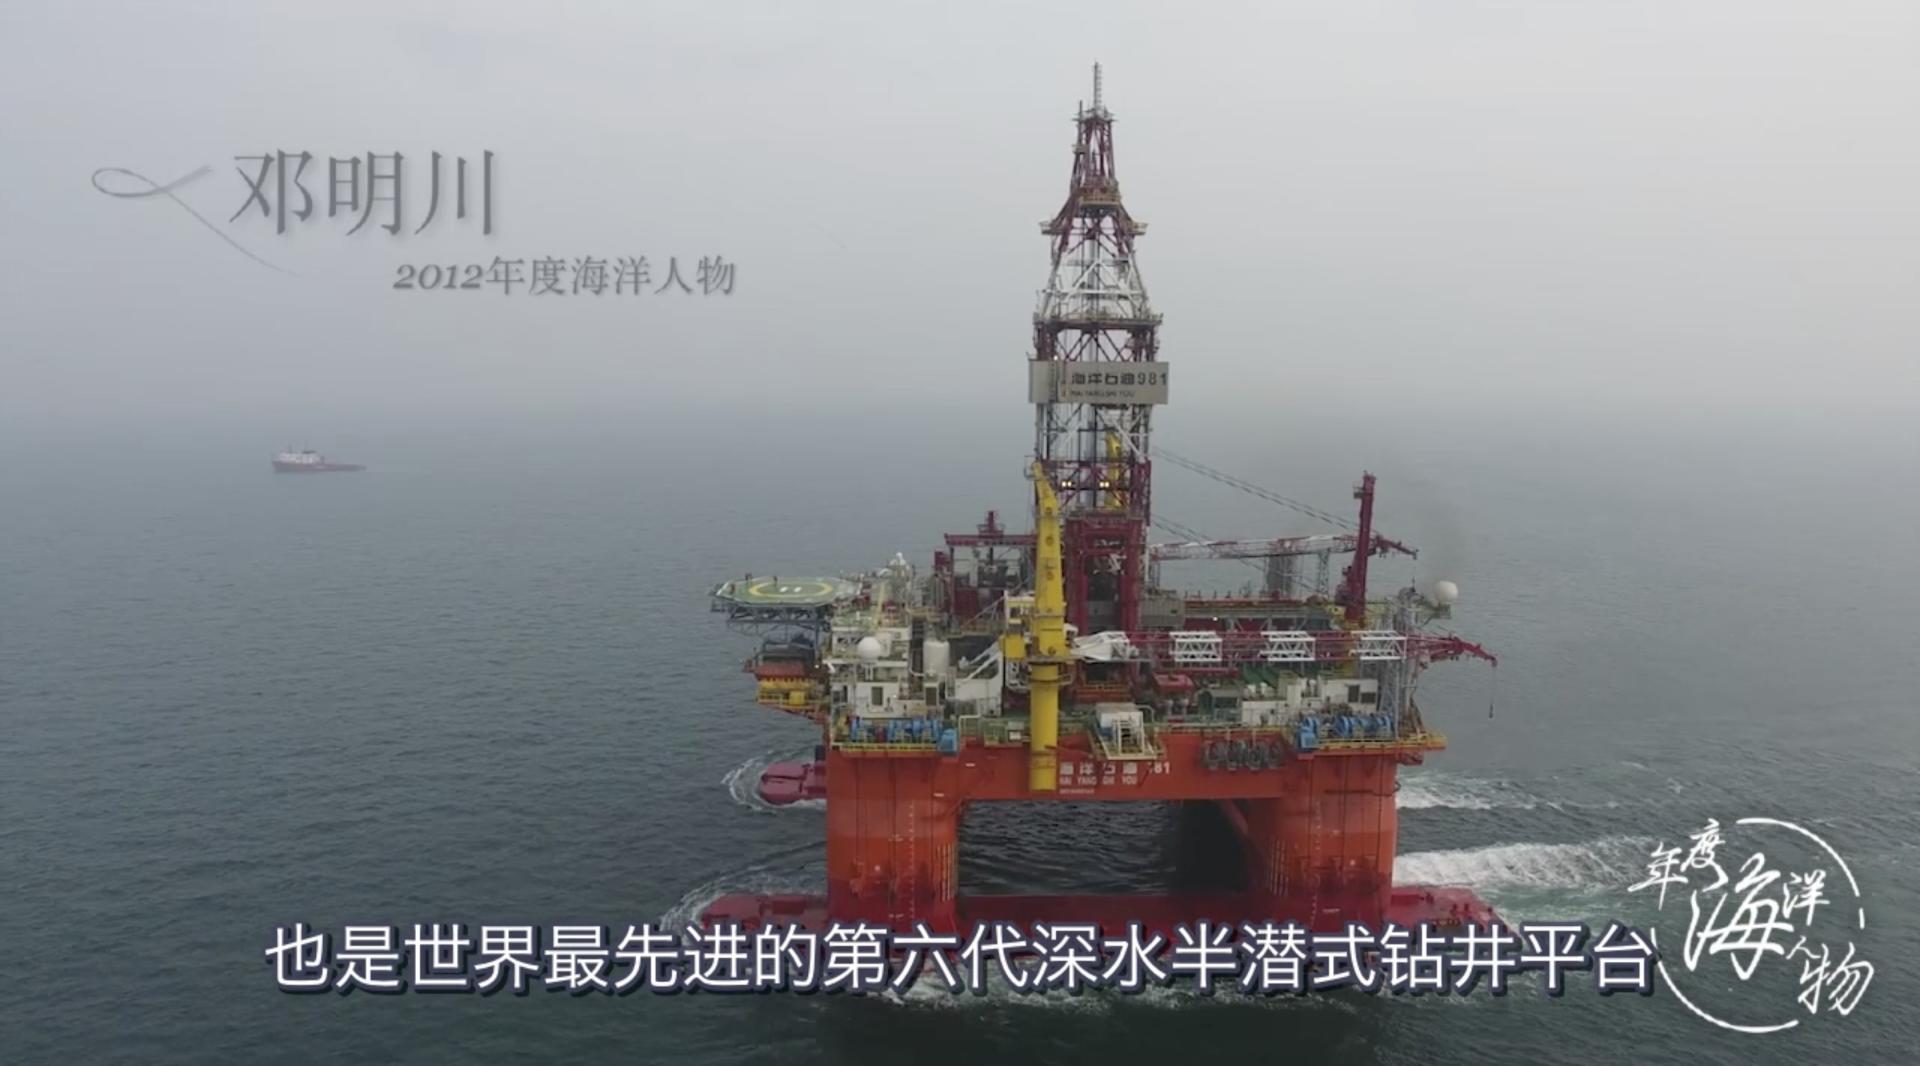 中海油典型宣传项目 海油深钻英雄——邓明川